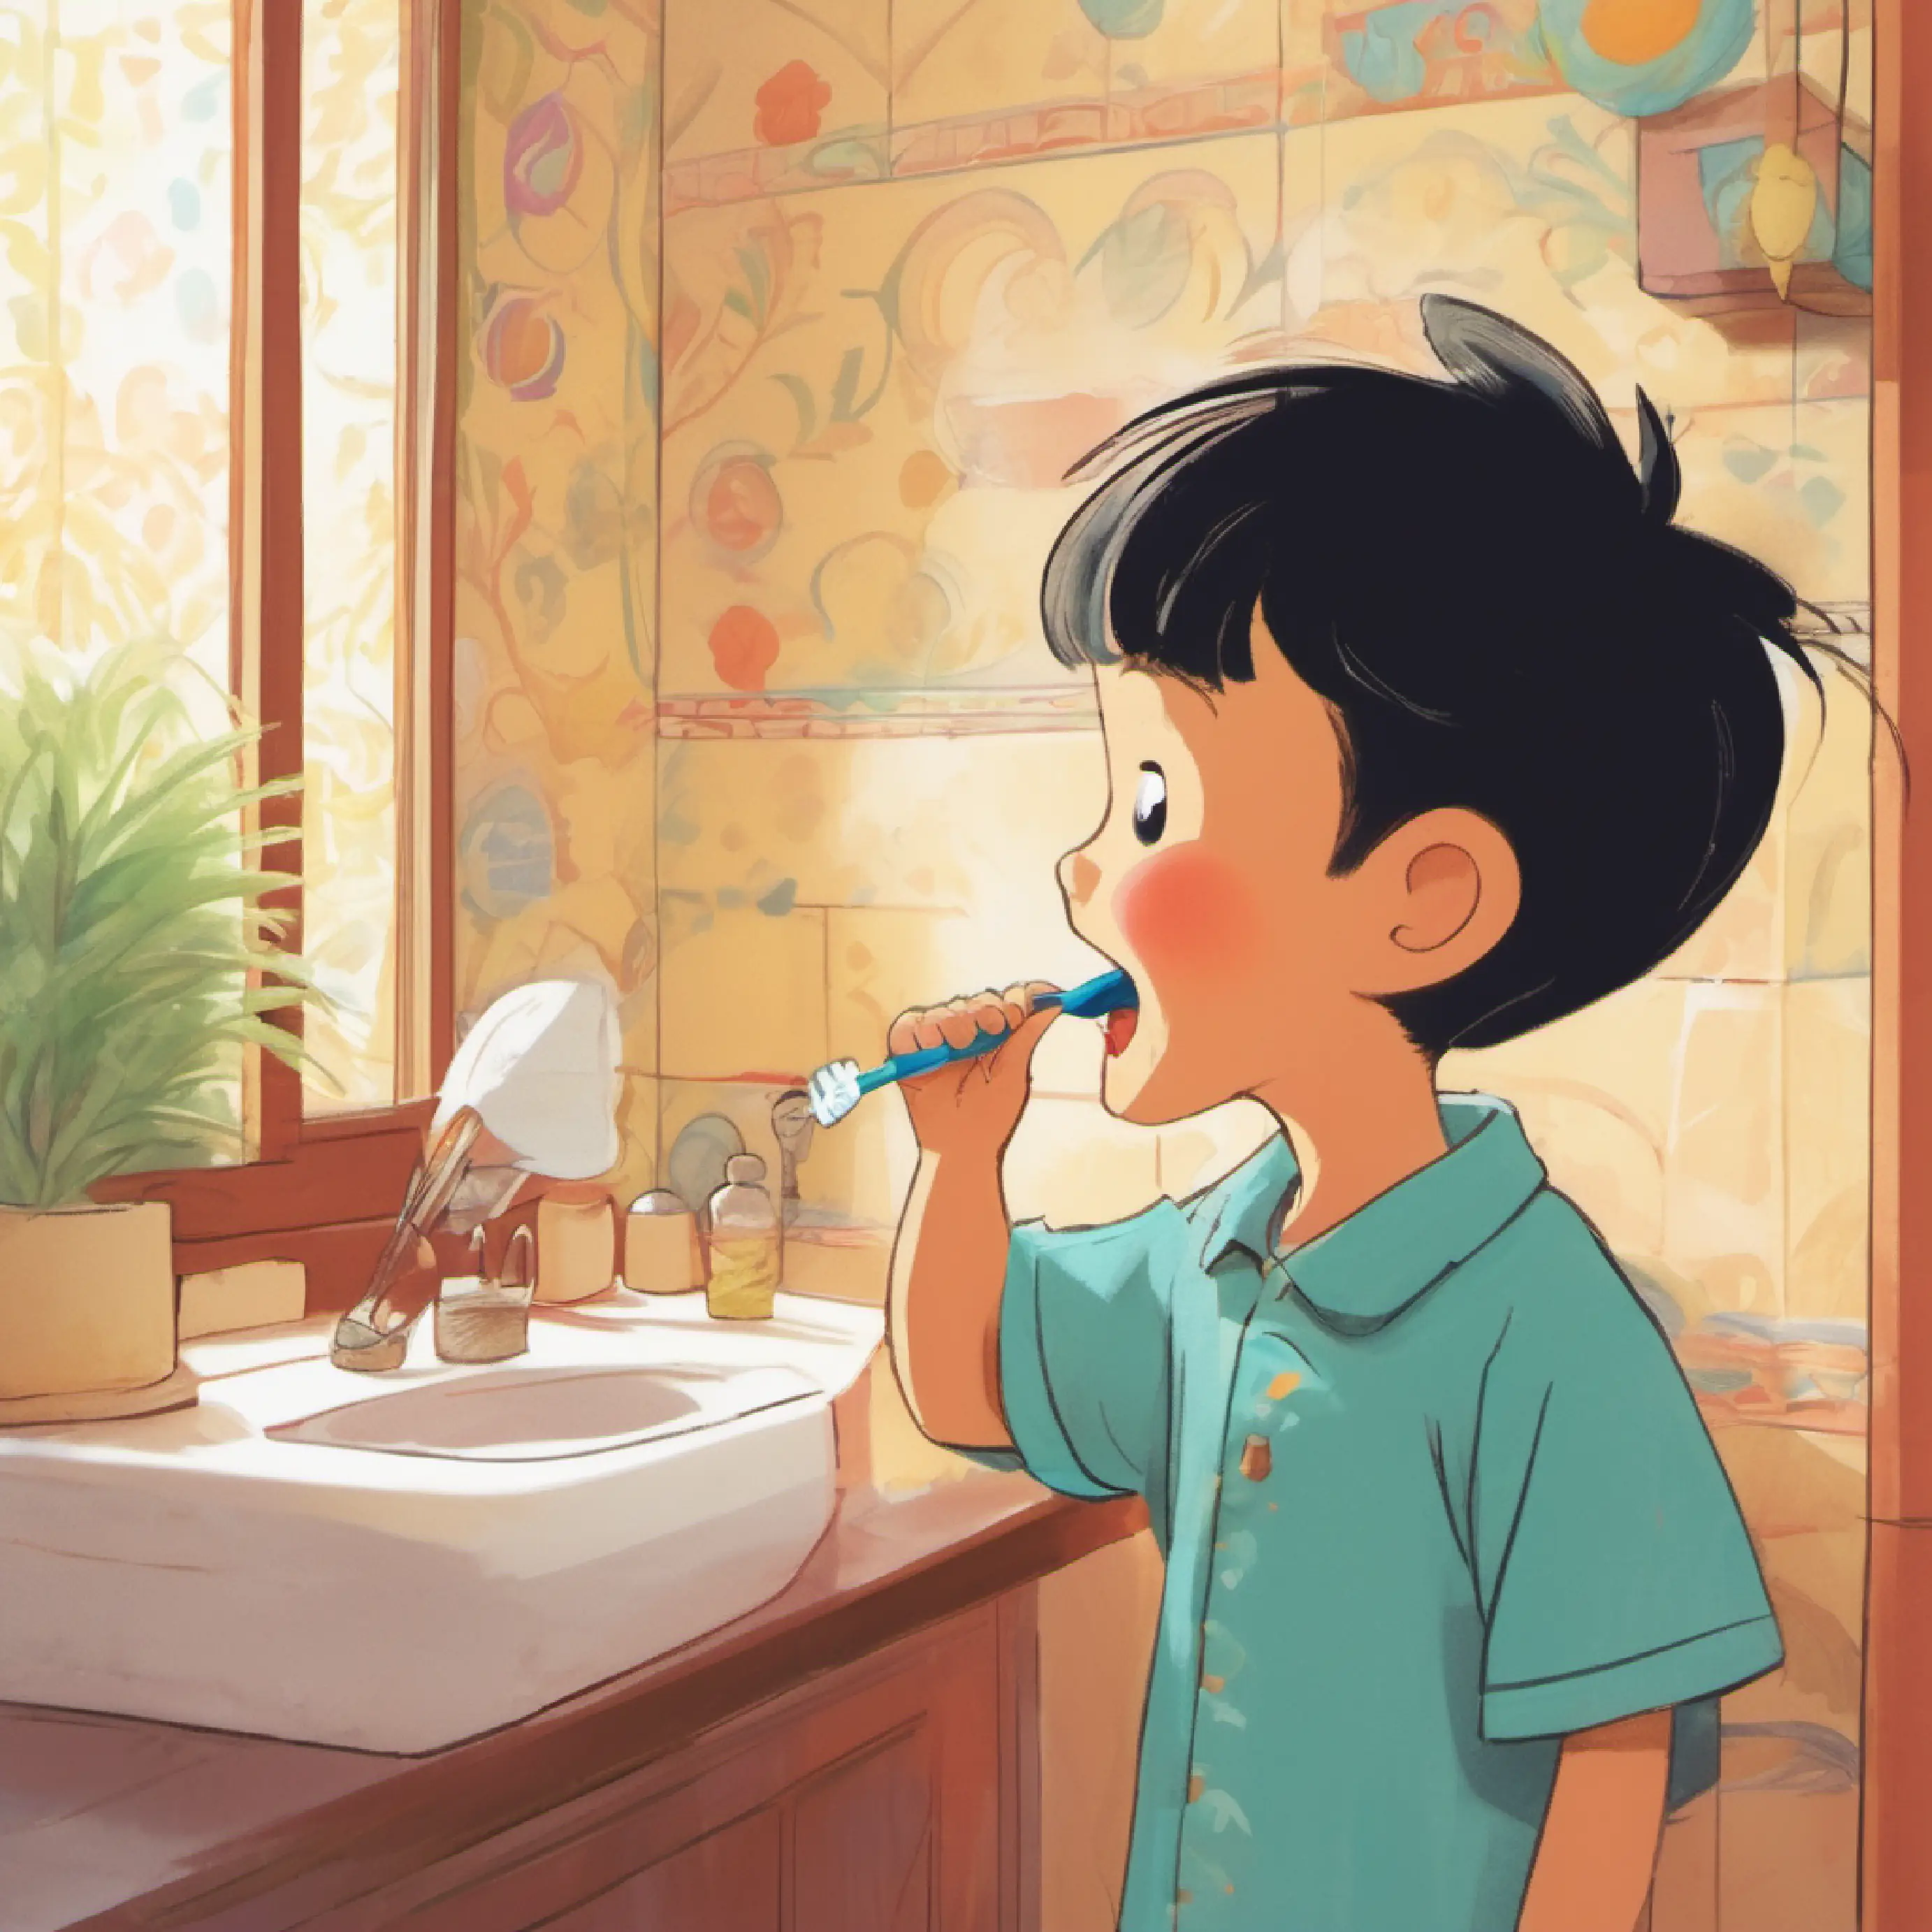 Xiao Zhu Zhu brushing his teeth, showing routine.